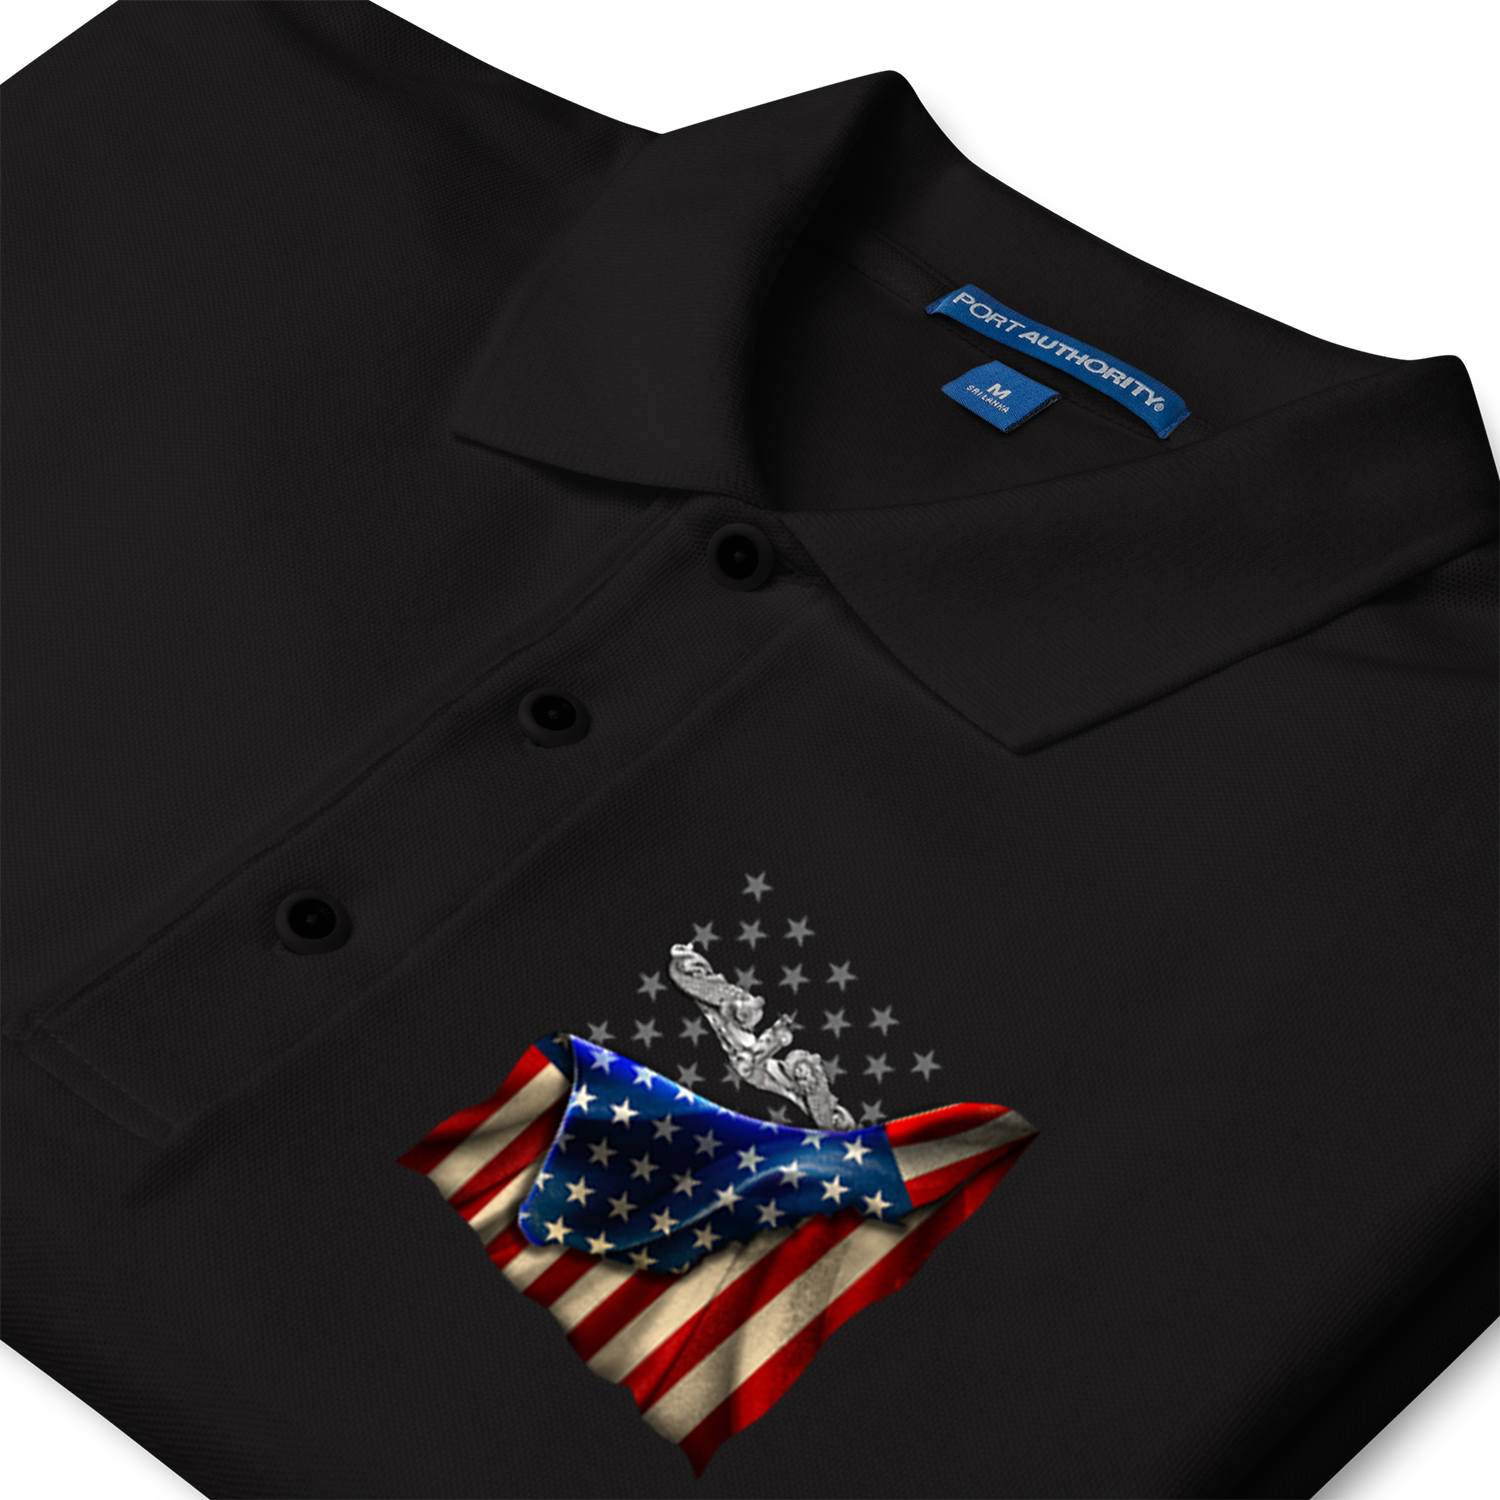 Custom US Navy Ranks/Insignia, USA Flag, Print On Left Chest Polo Shirt